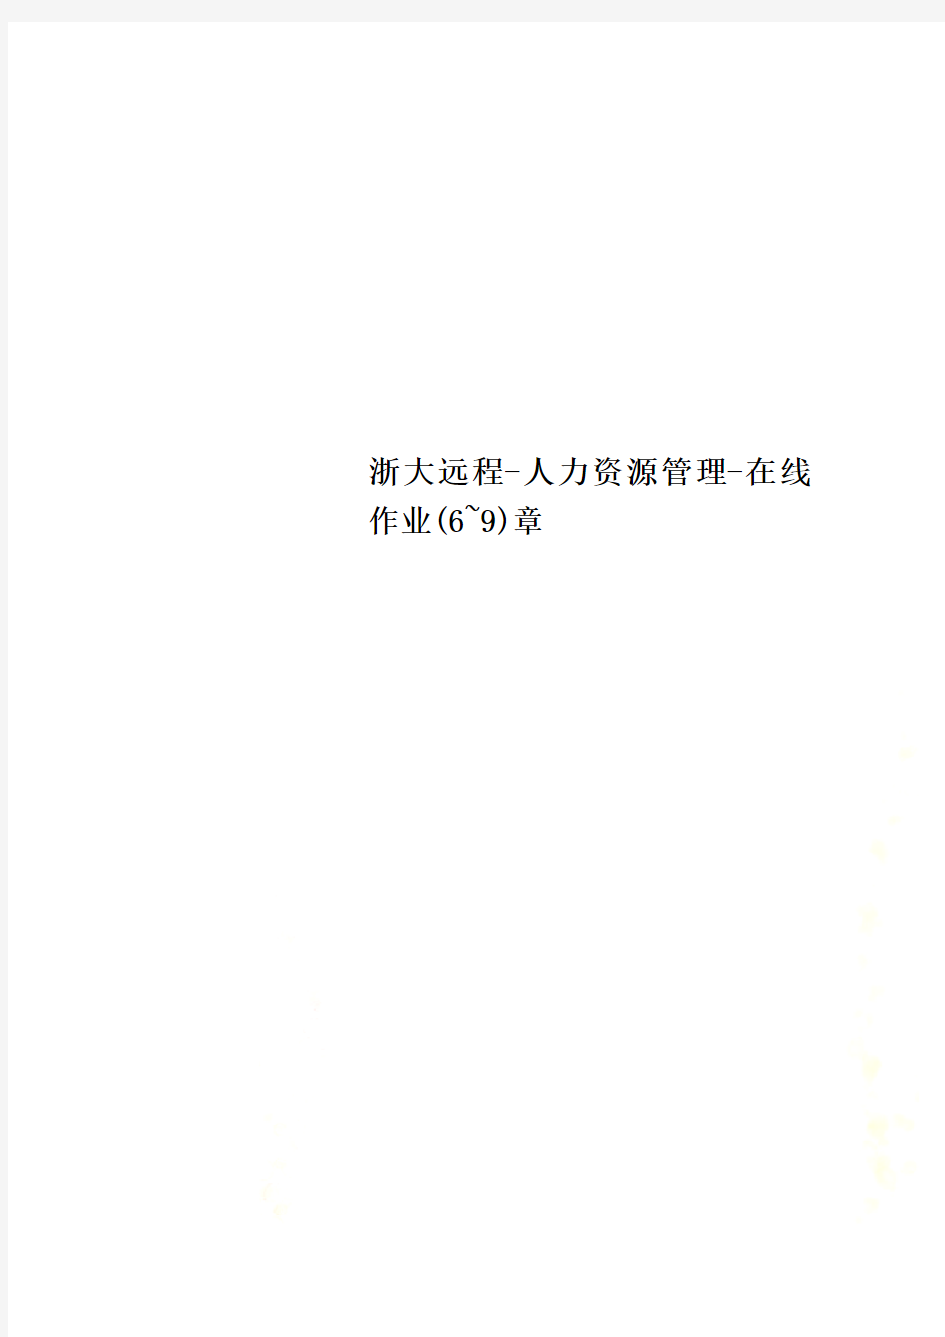 浙大远程-人力资源管理-在线作业(6~9)章